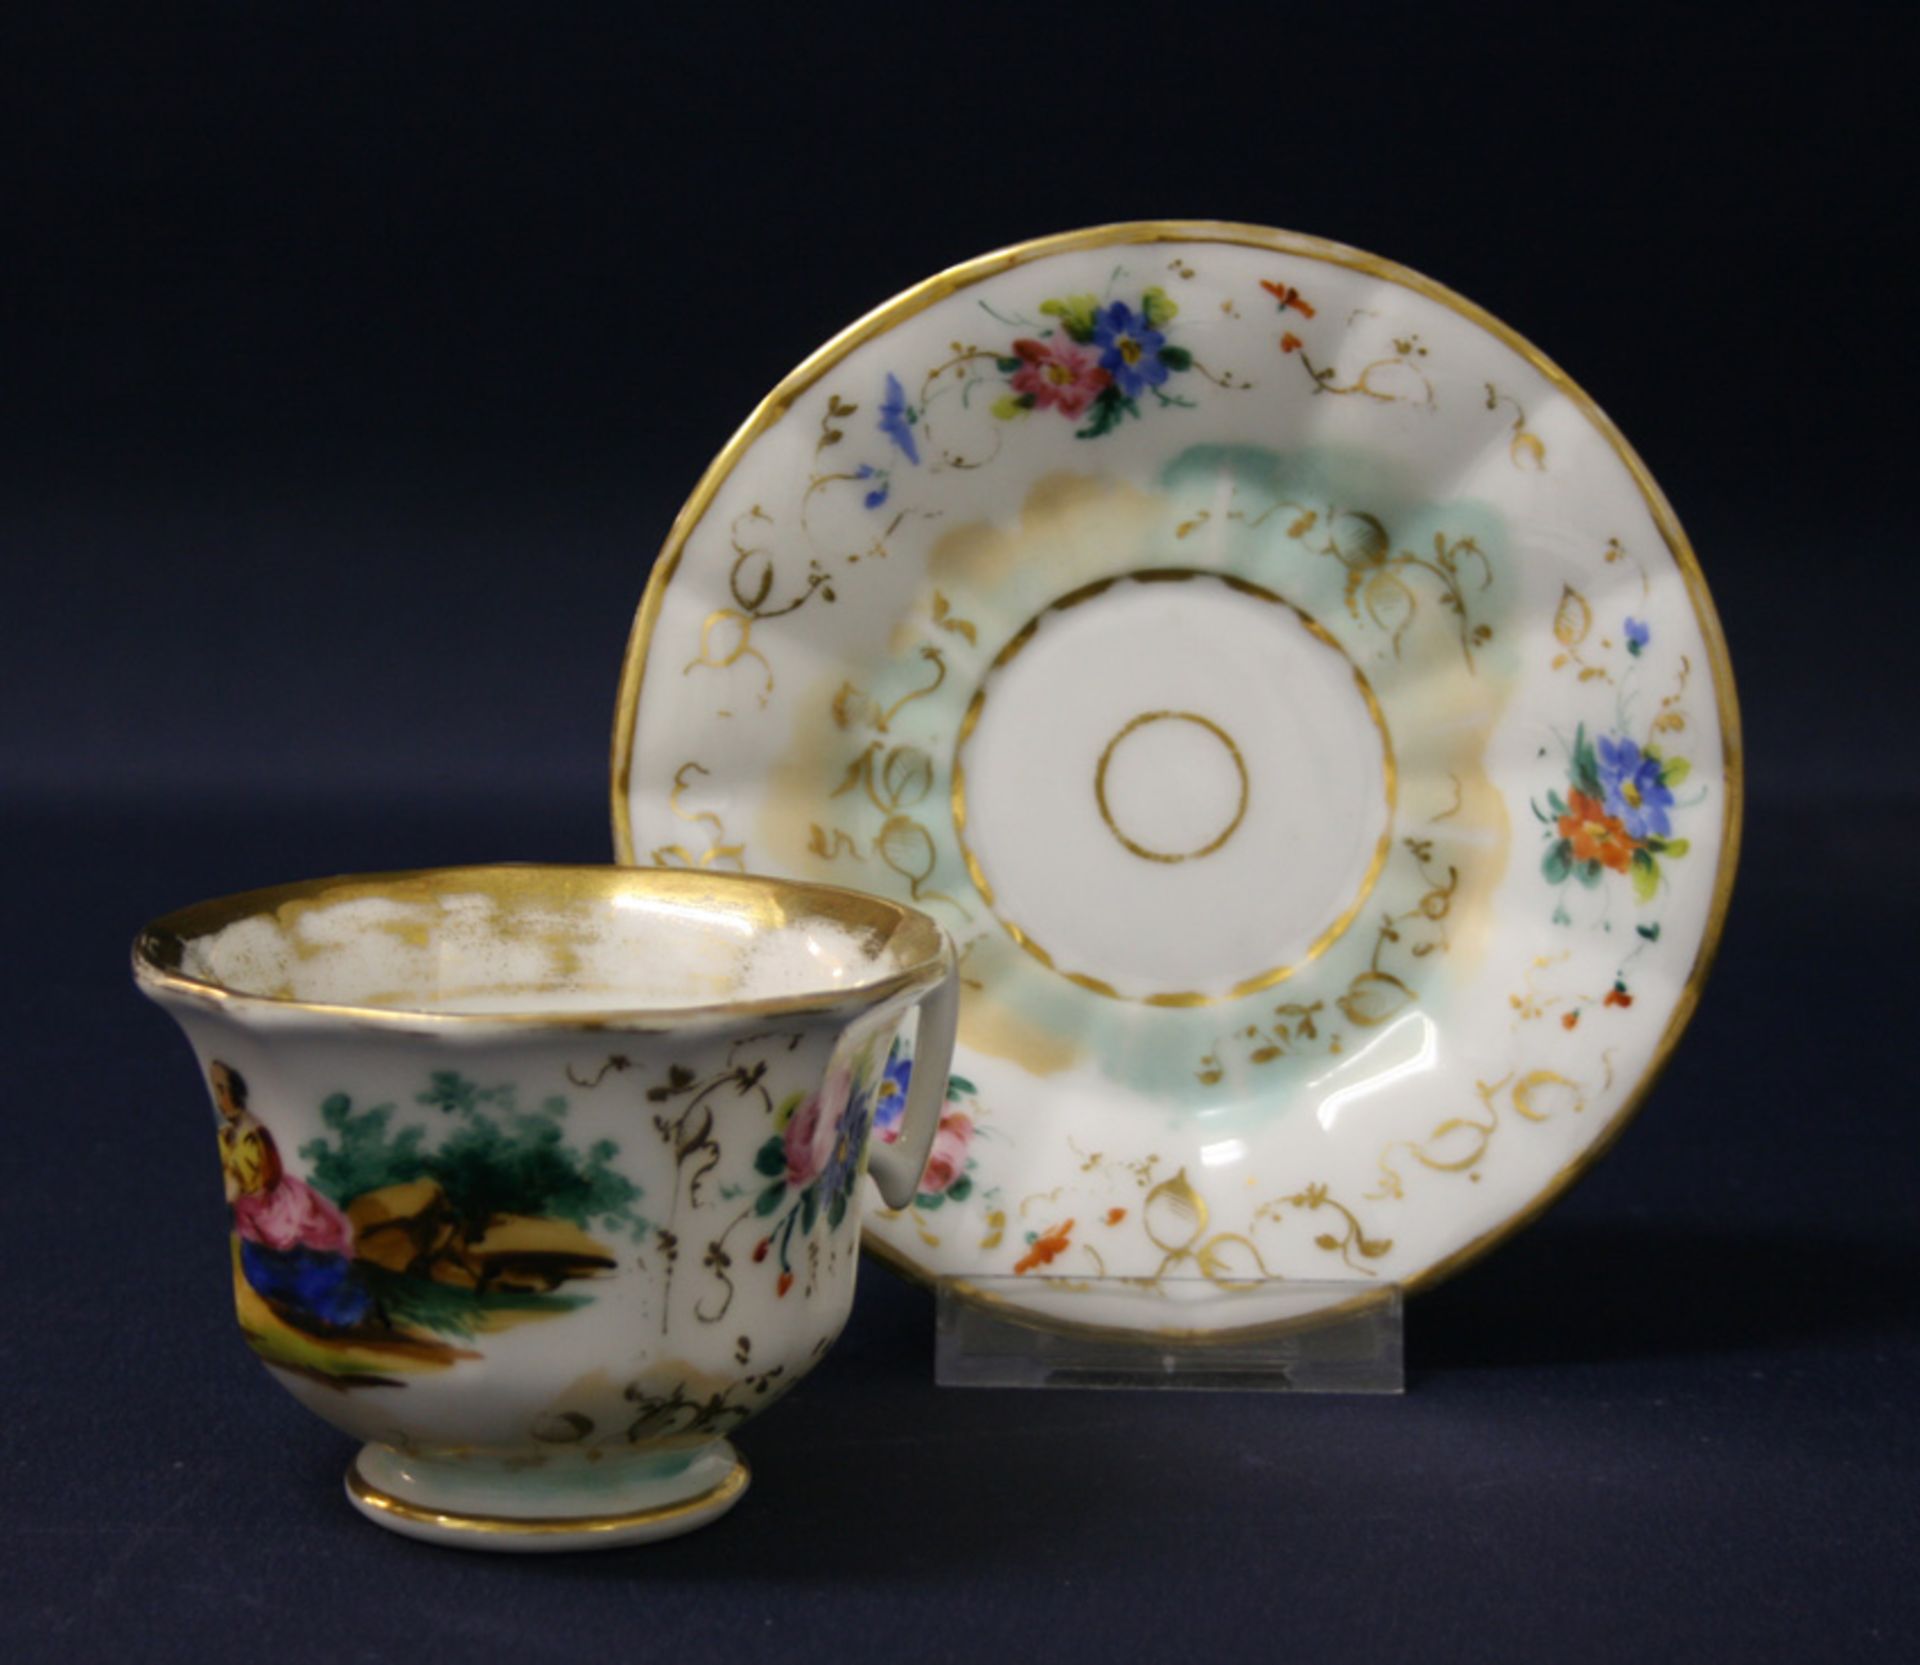 Tasse mit Untertasseum 1860, Porzellan, ungemarkt, handgemalter, bunter Dekor mit Bäuerin sowie